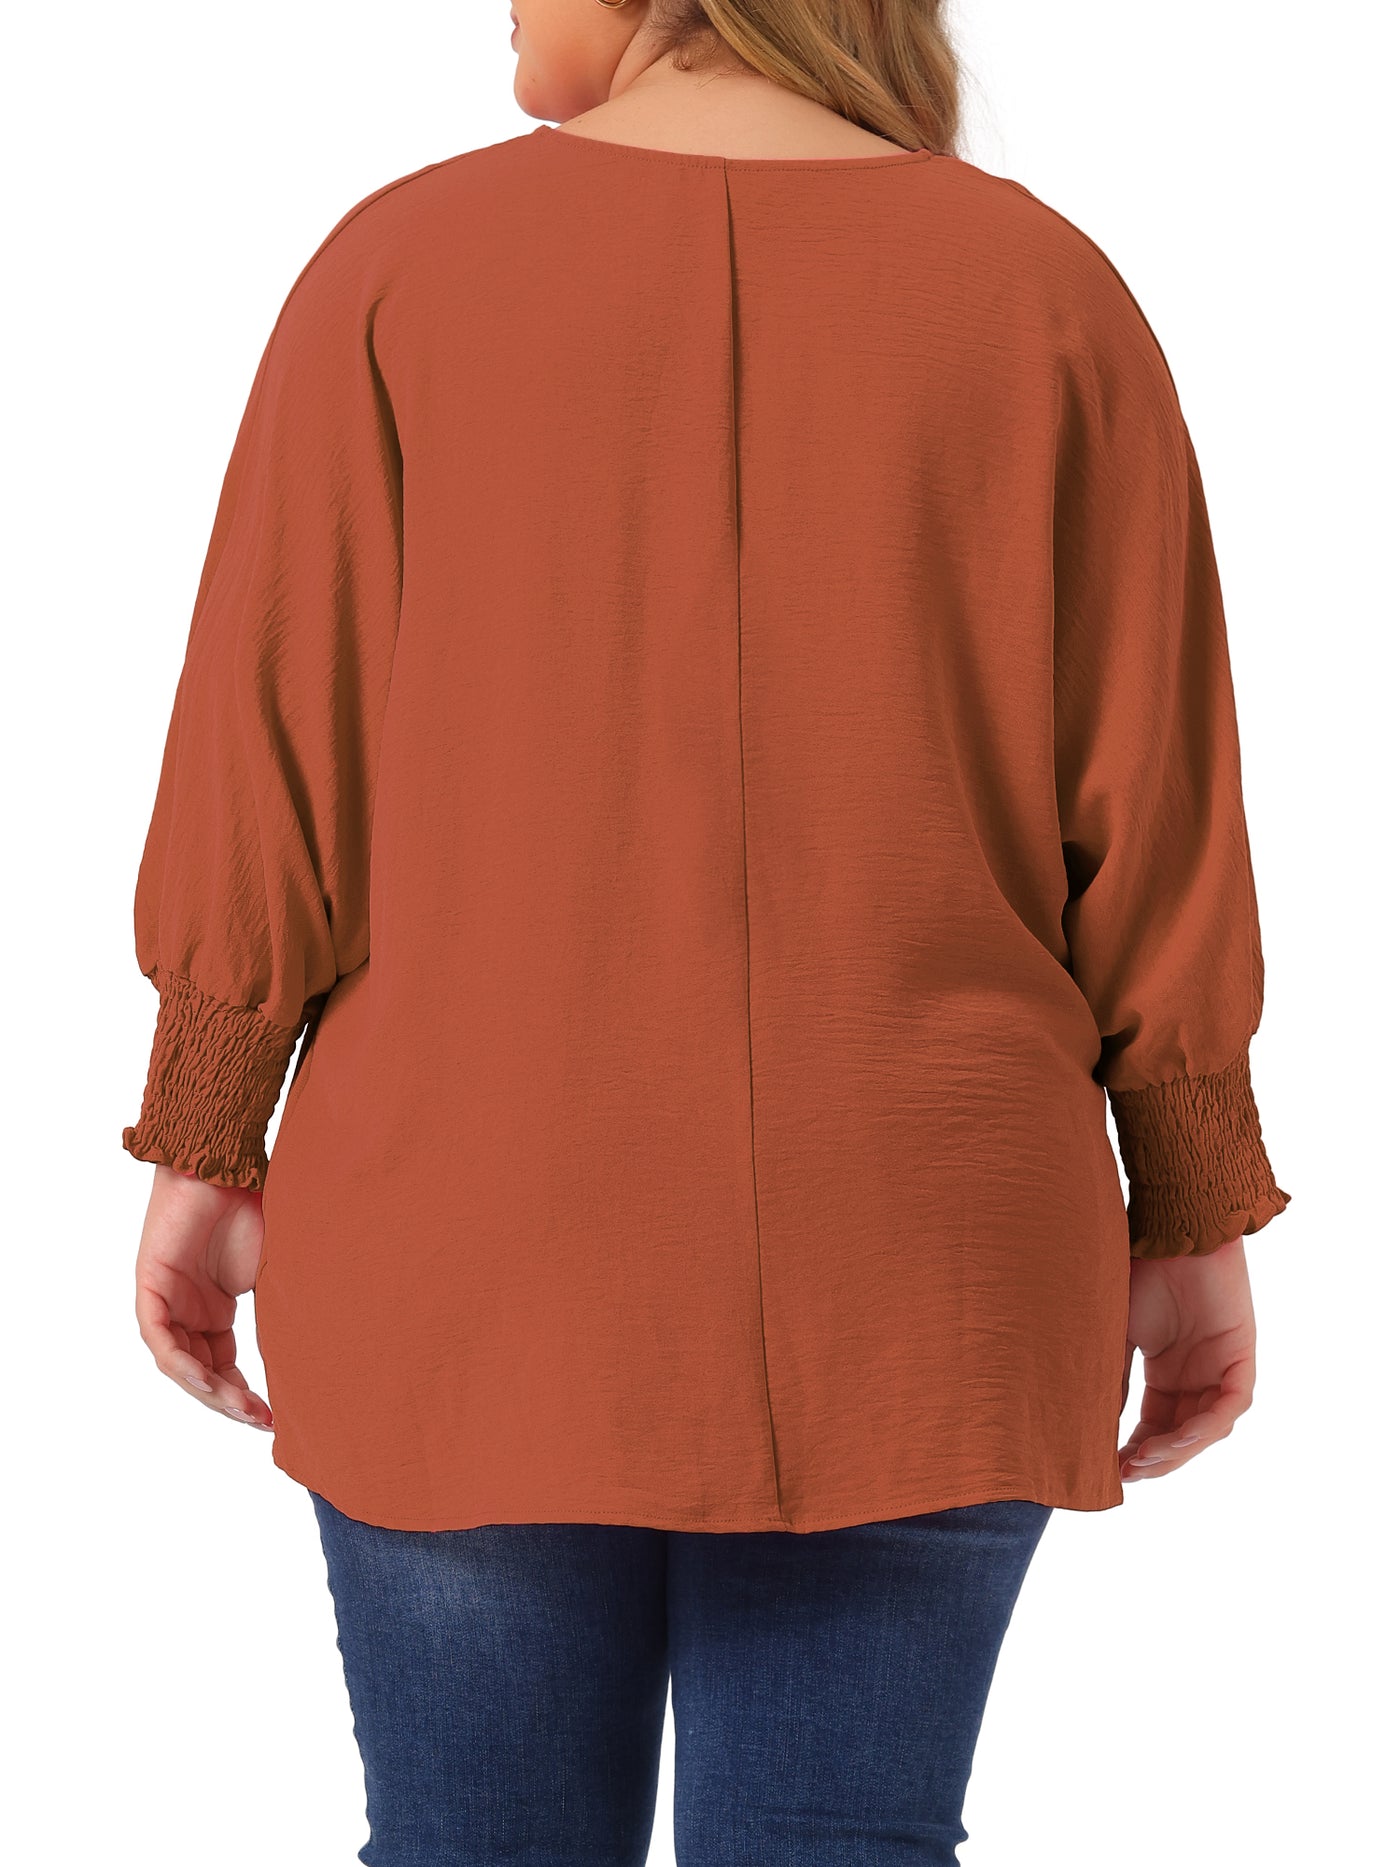 Bublédon Plus Size Chiffon Tops for Women Batwing Ruffle Long Sleeve Casual Loose Shirts Blouses